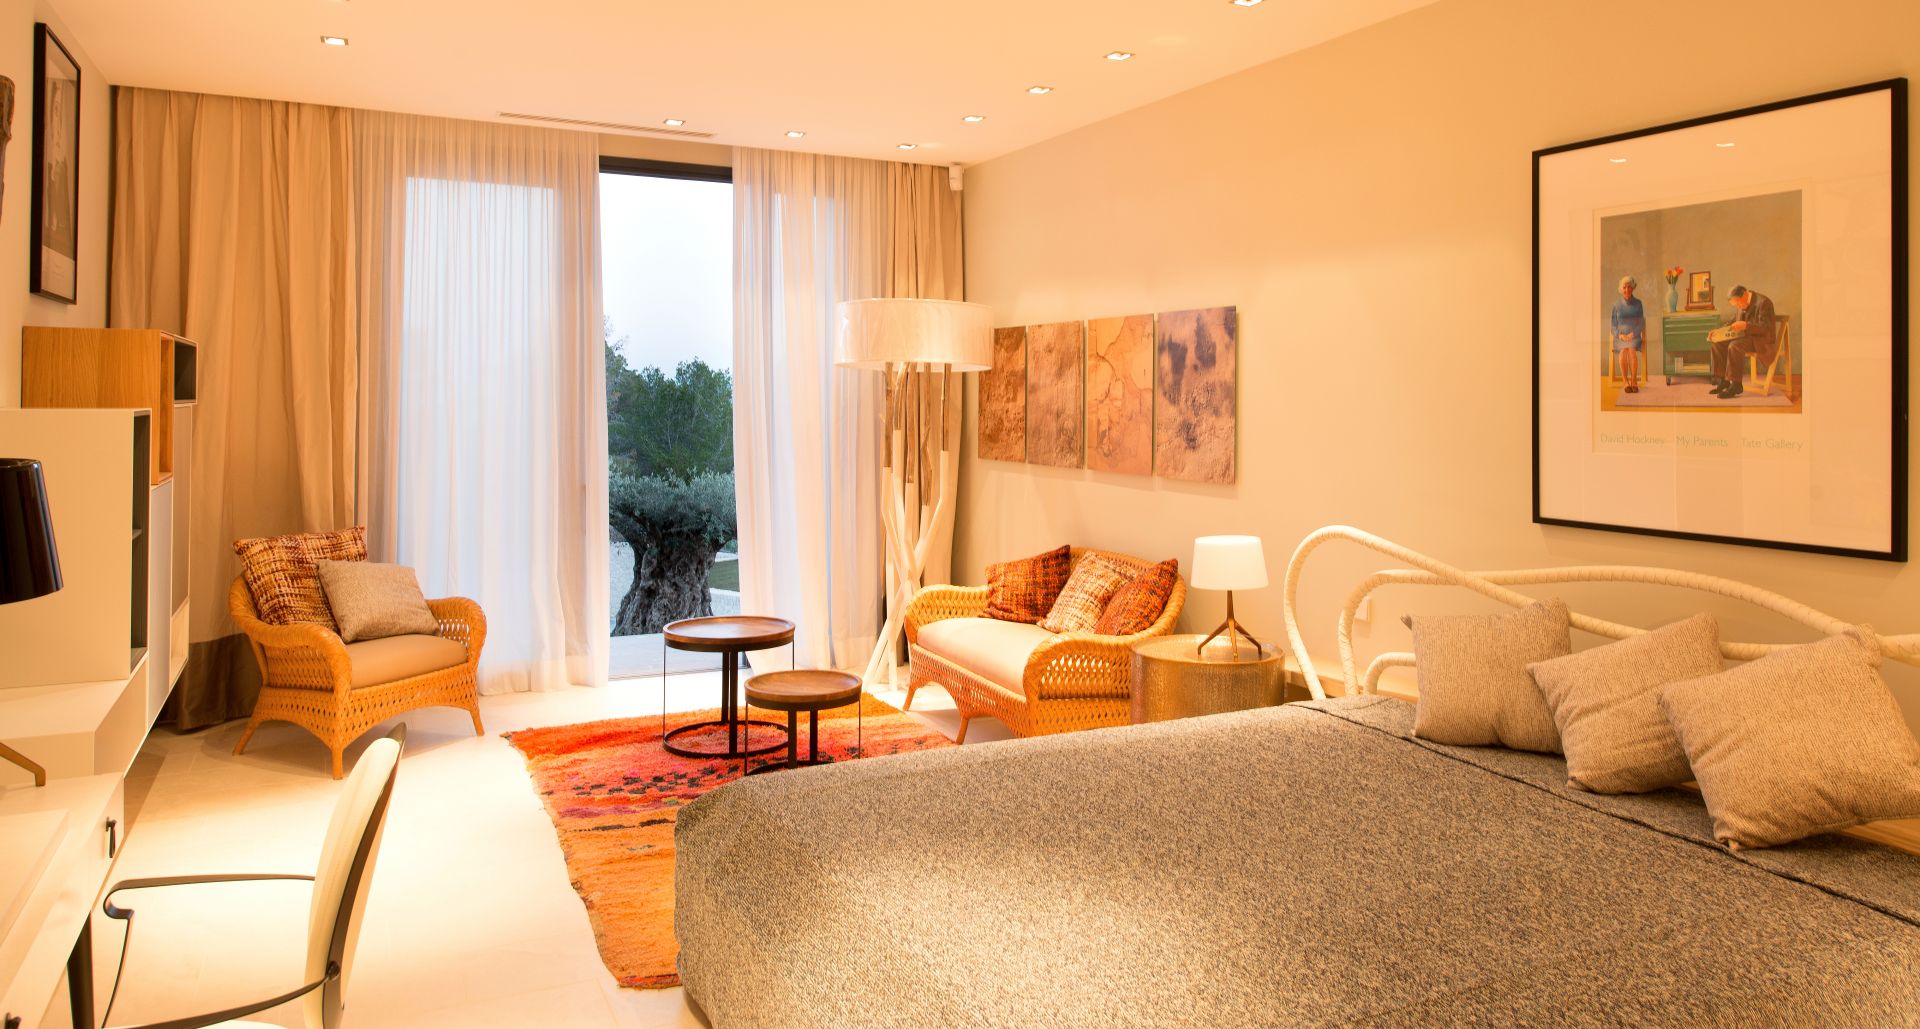 Moderne luxe villa in Ibiza begeerde schikking Vista Alegre